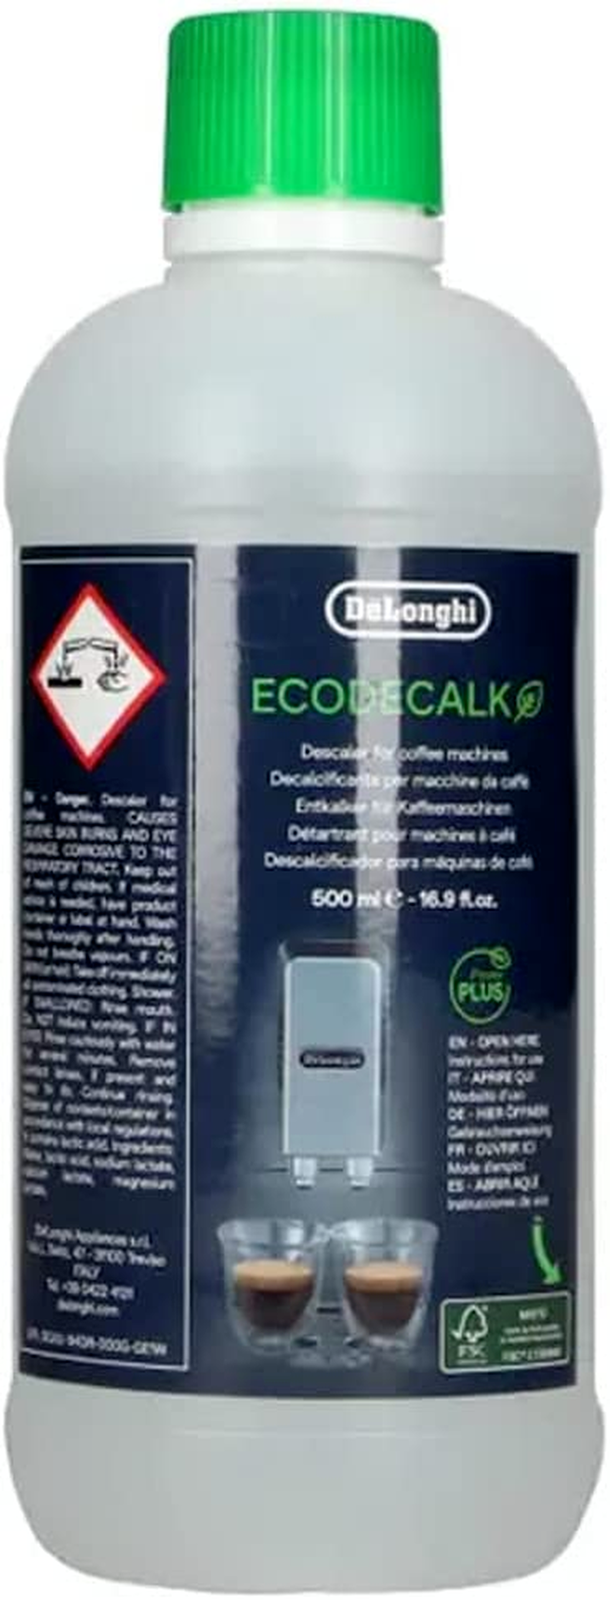 2 x DeLonghi EcoDecalk 500 ml DLSC500